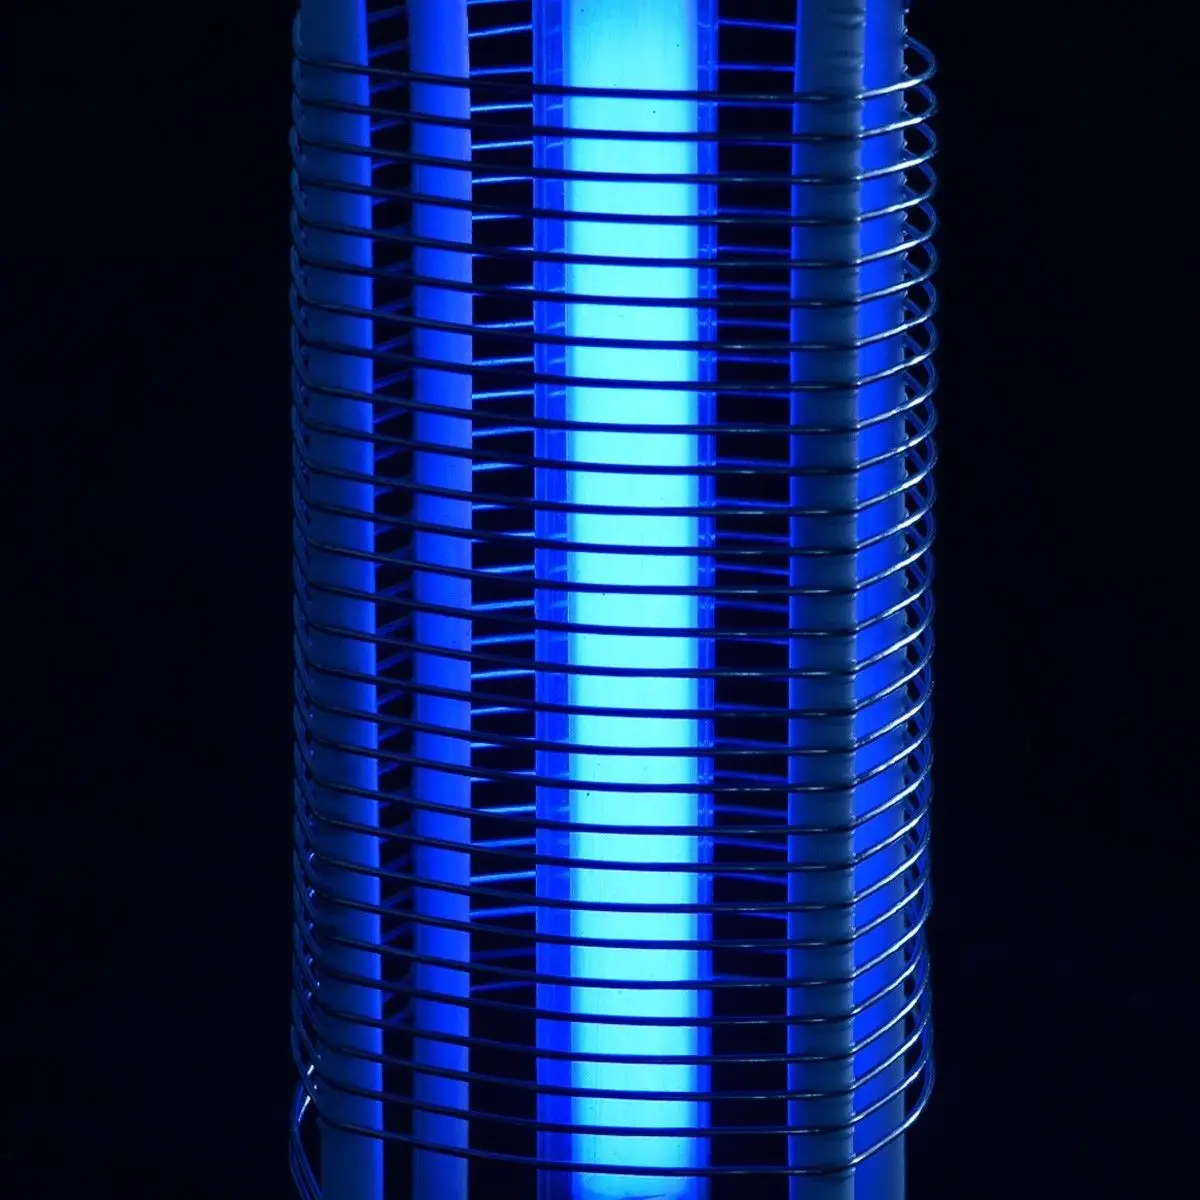 110 В США Plug Электрический москитная убийца моли убийство насекомых LED ошибки лампа Zapper ночь покупать лампы Ловушка ОСА вредителями свет